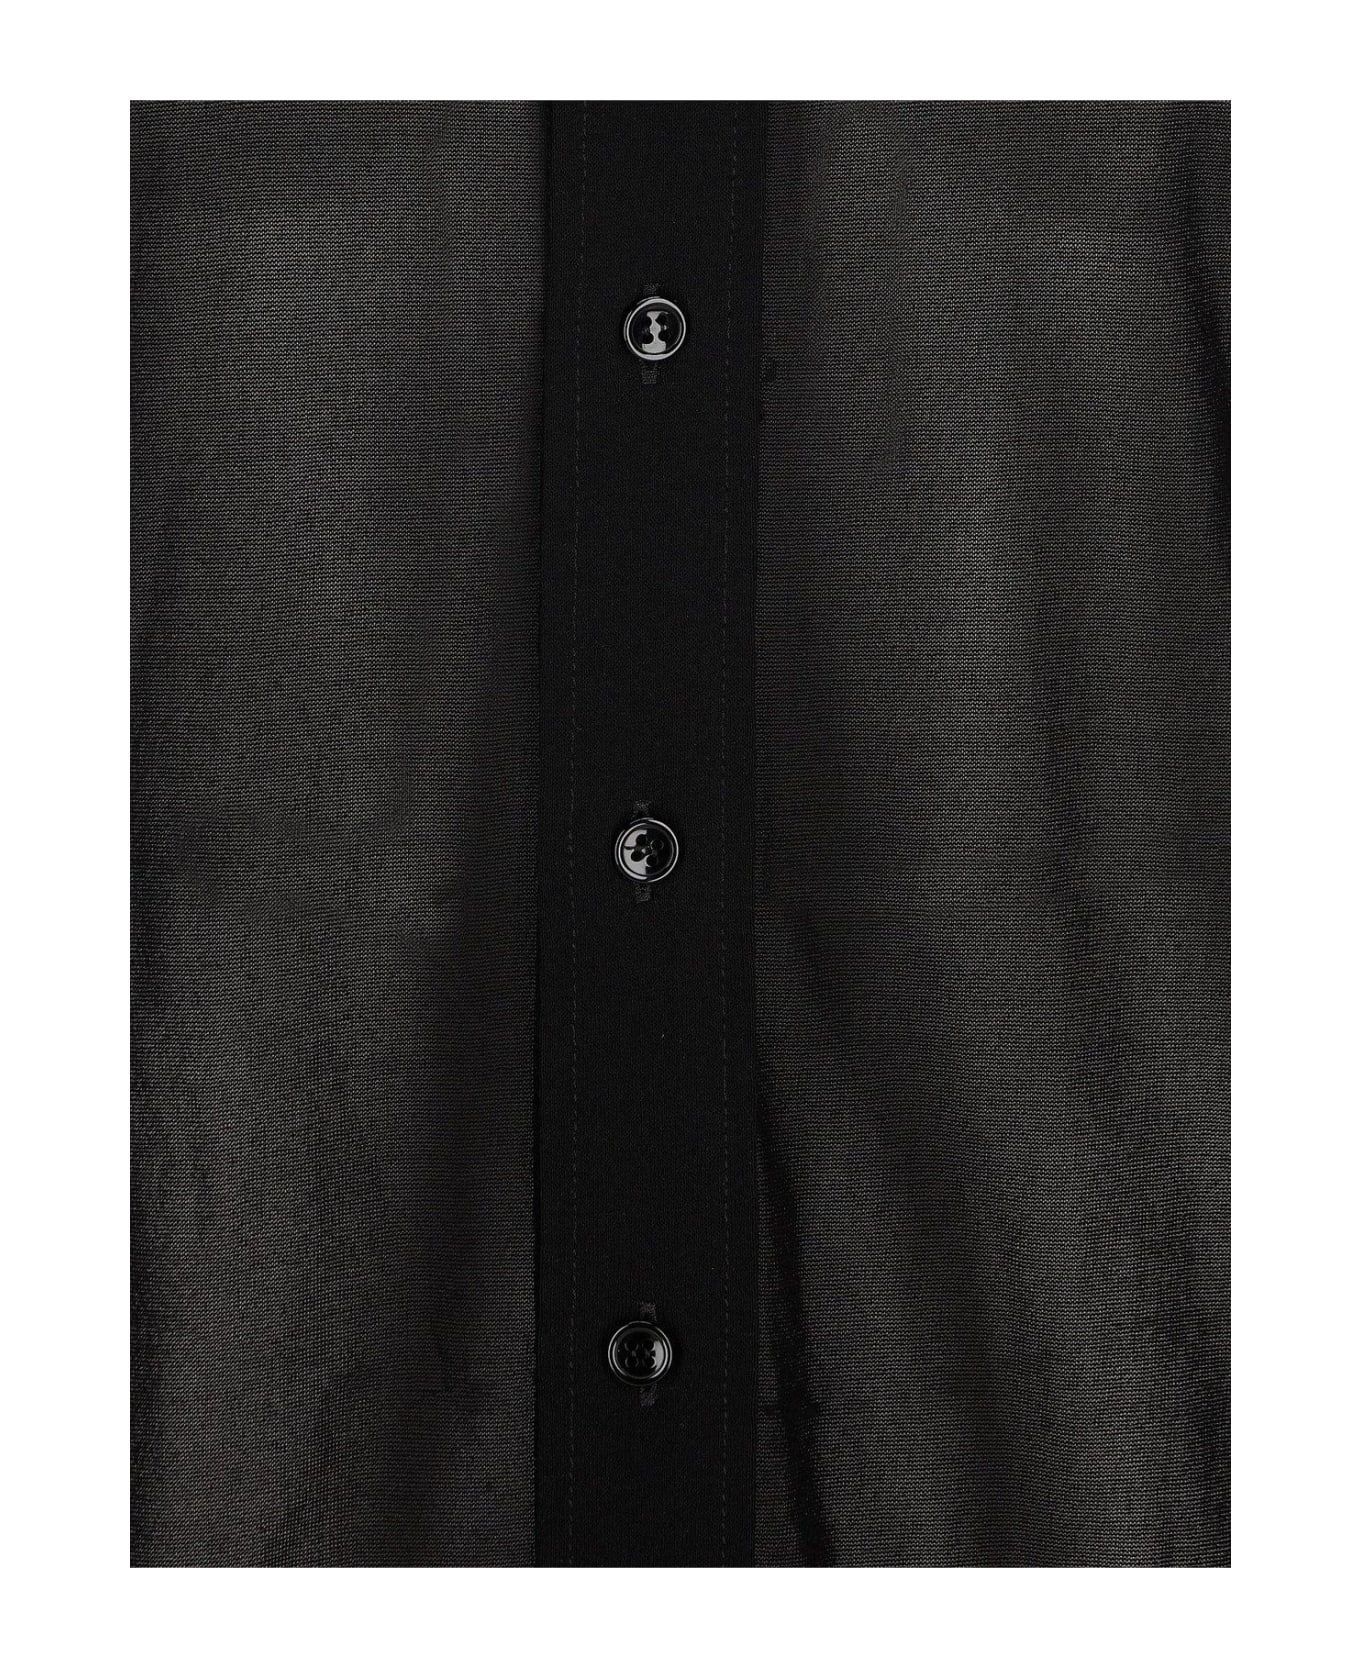 Saint Laurent Semi-sheer Buttoned Shirt - Noir